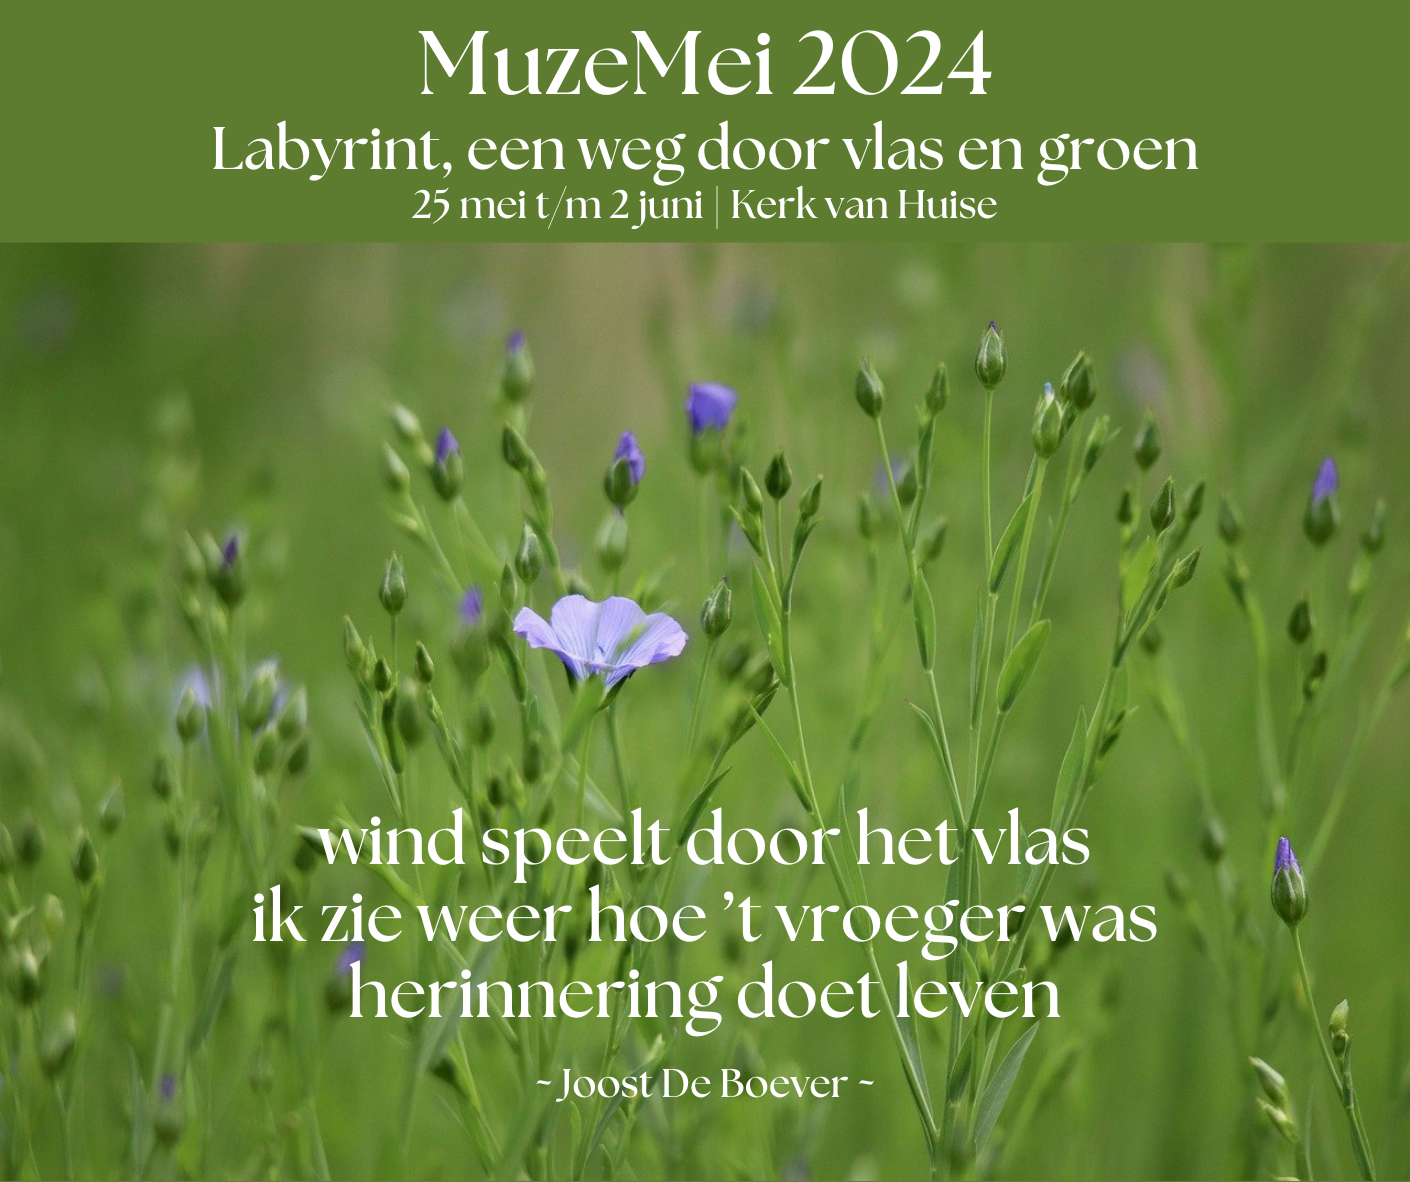 MuzeMei 2024 - haiku